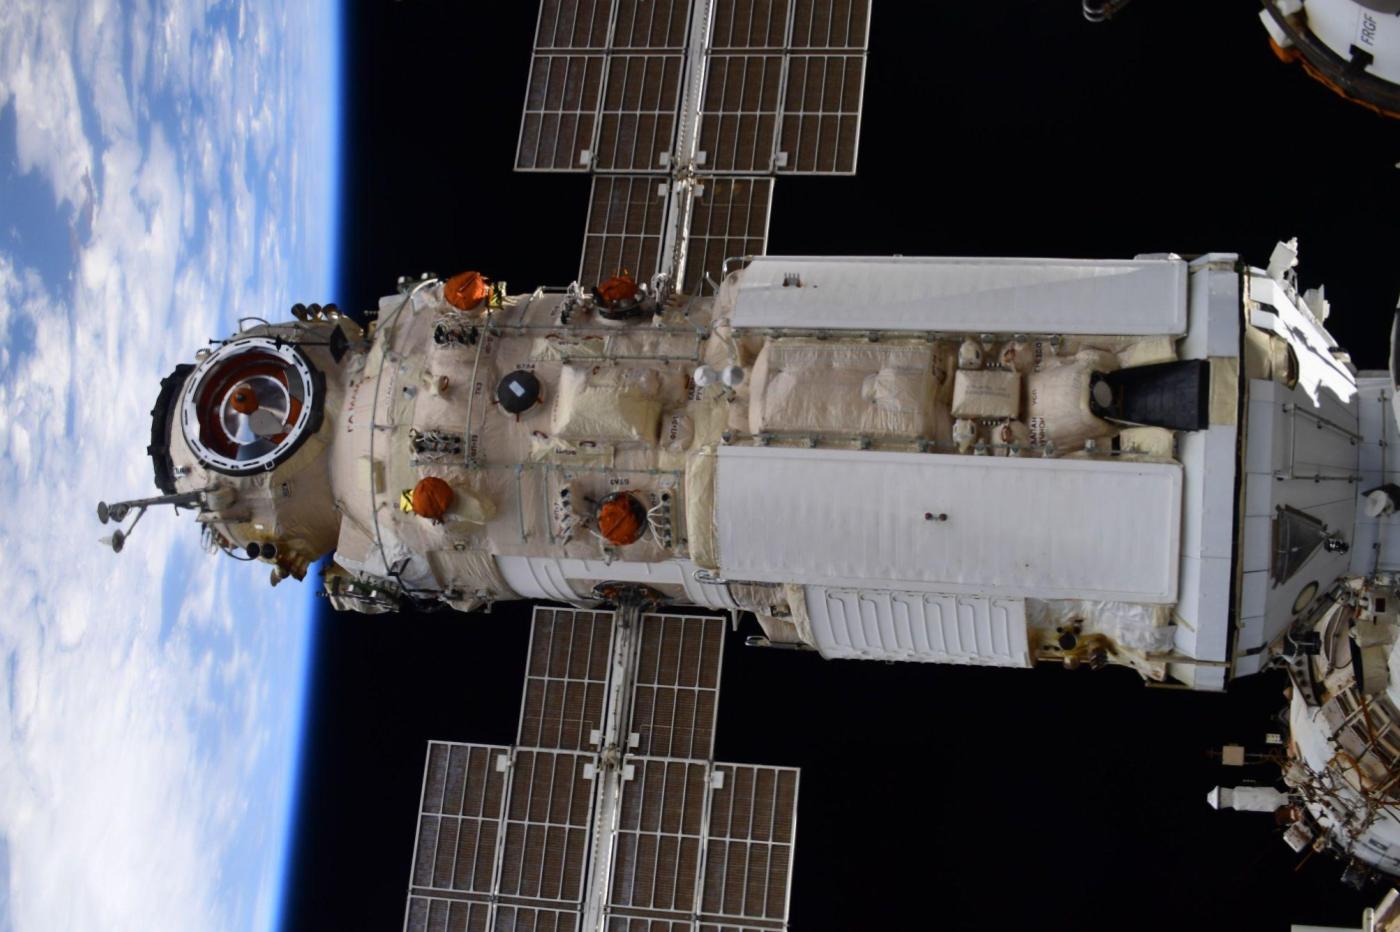 Nauka, un module russe de l'ISS